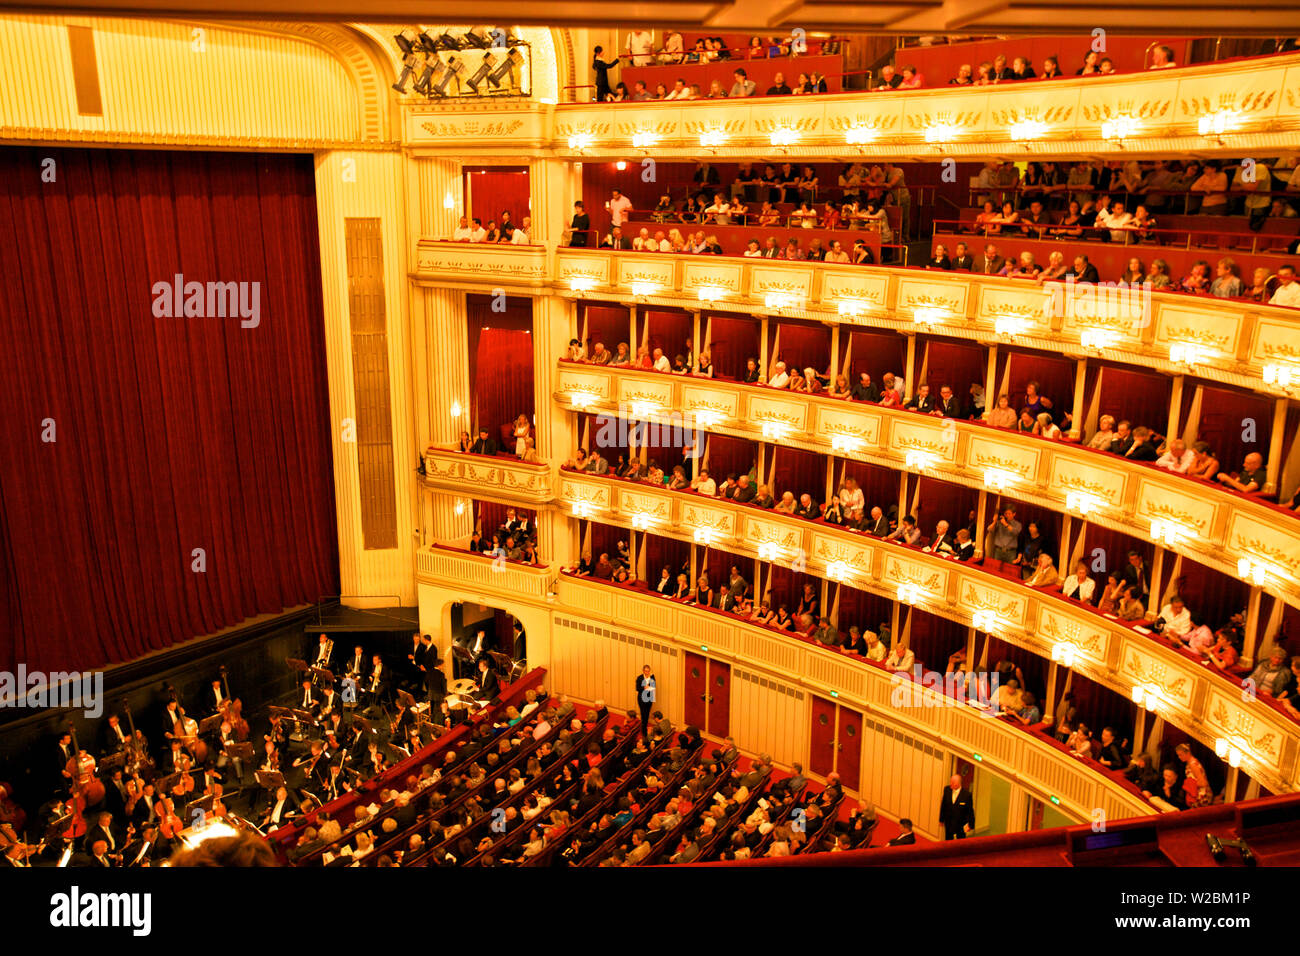 Intérieur de l'Opéra de Vienne, Vienne, Autriche, Europe Centrale Banque D'Images